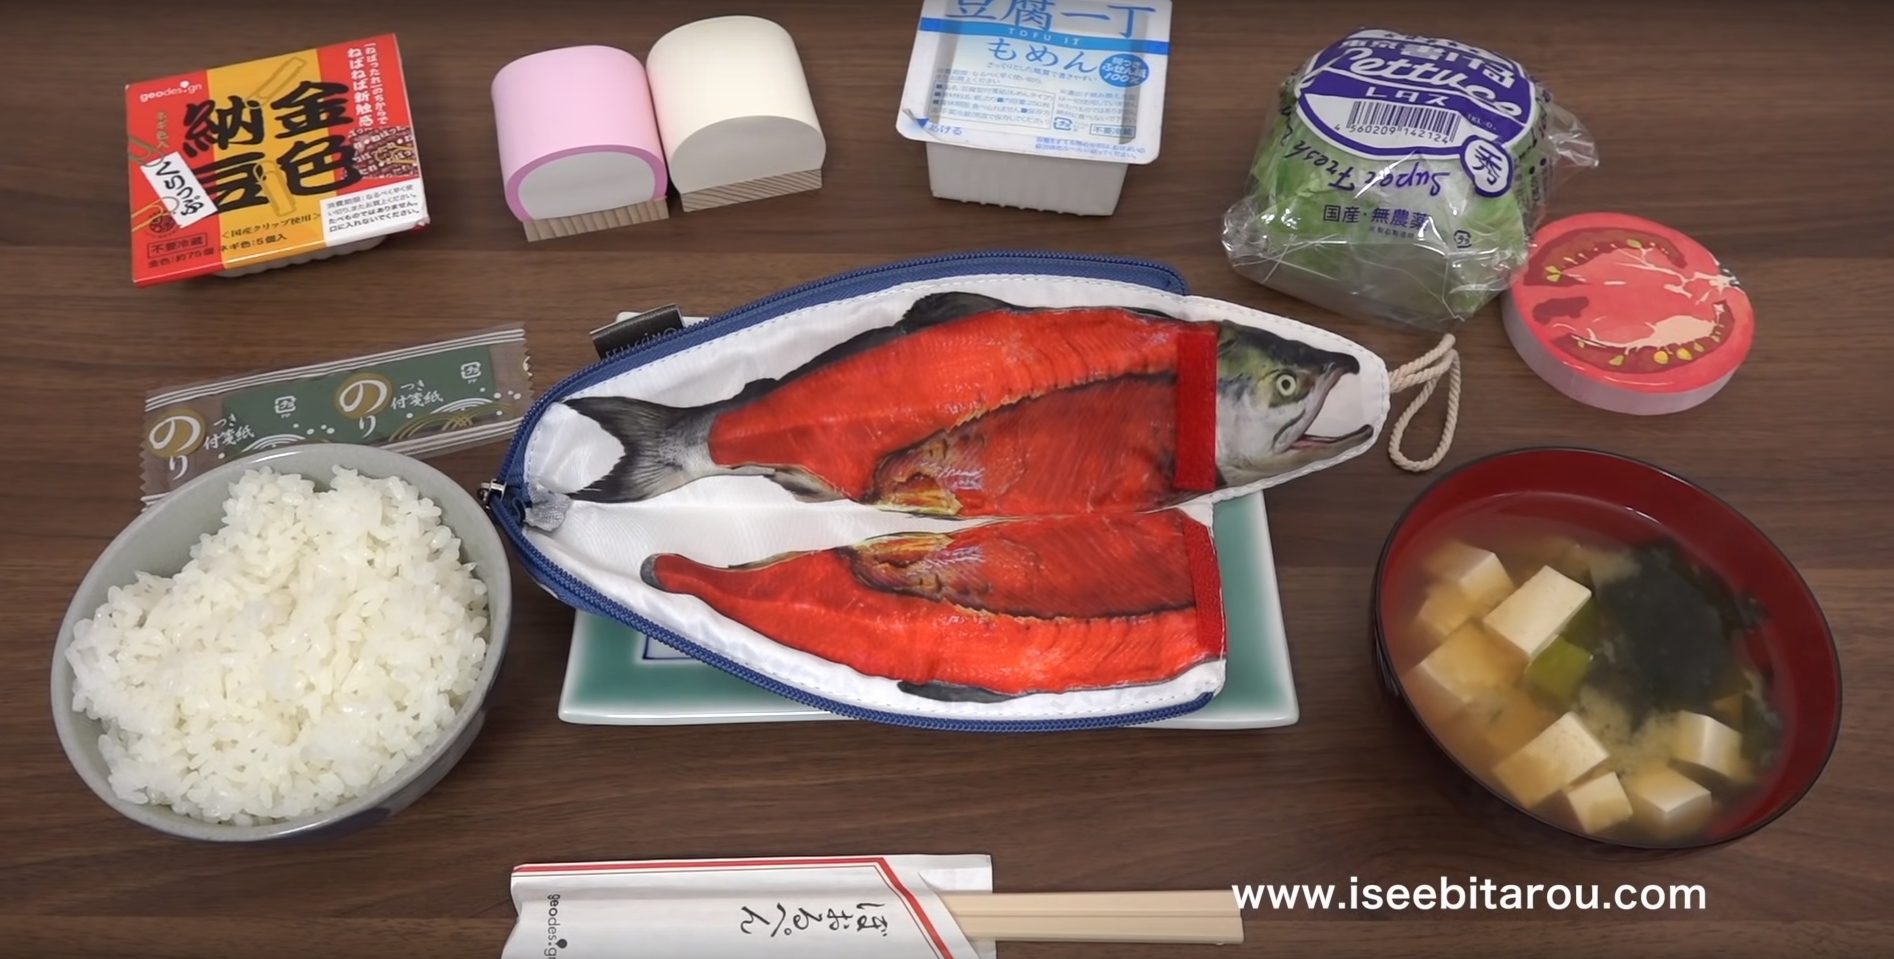 Des fournitures de bureau japonaises mises en scène dans un faux repas